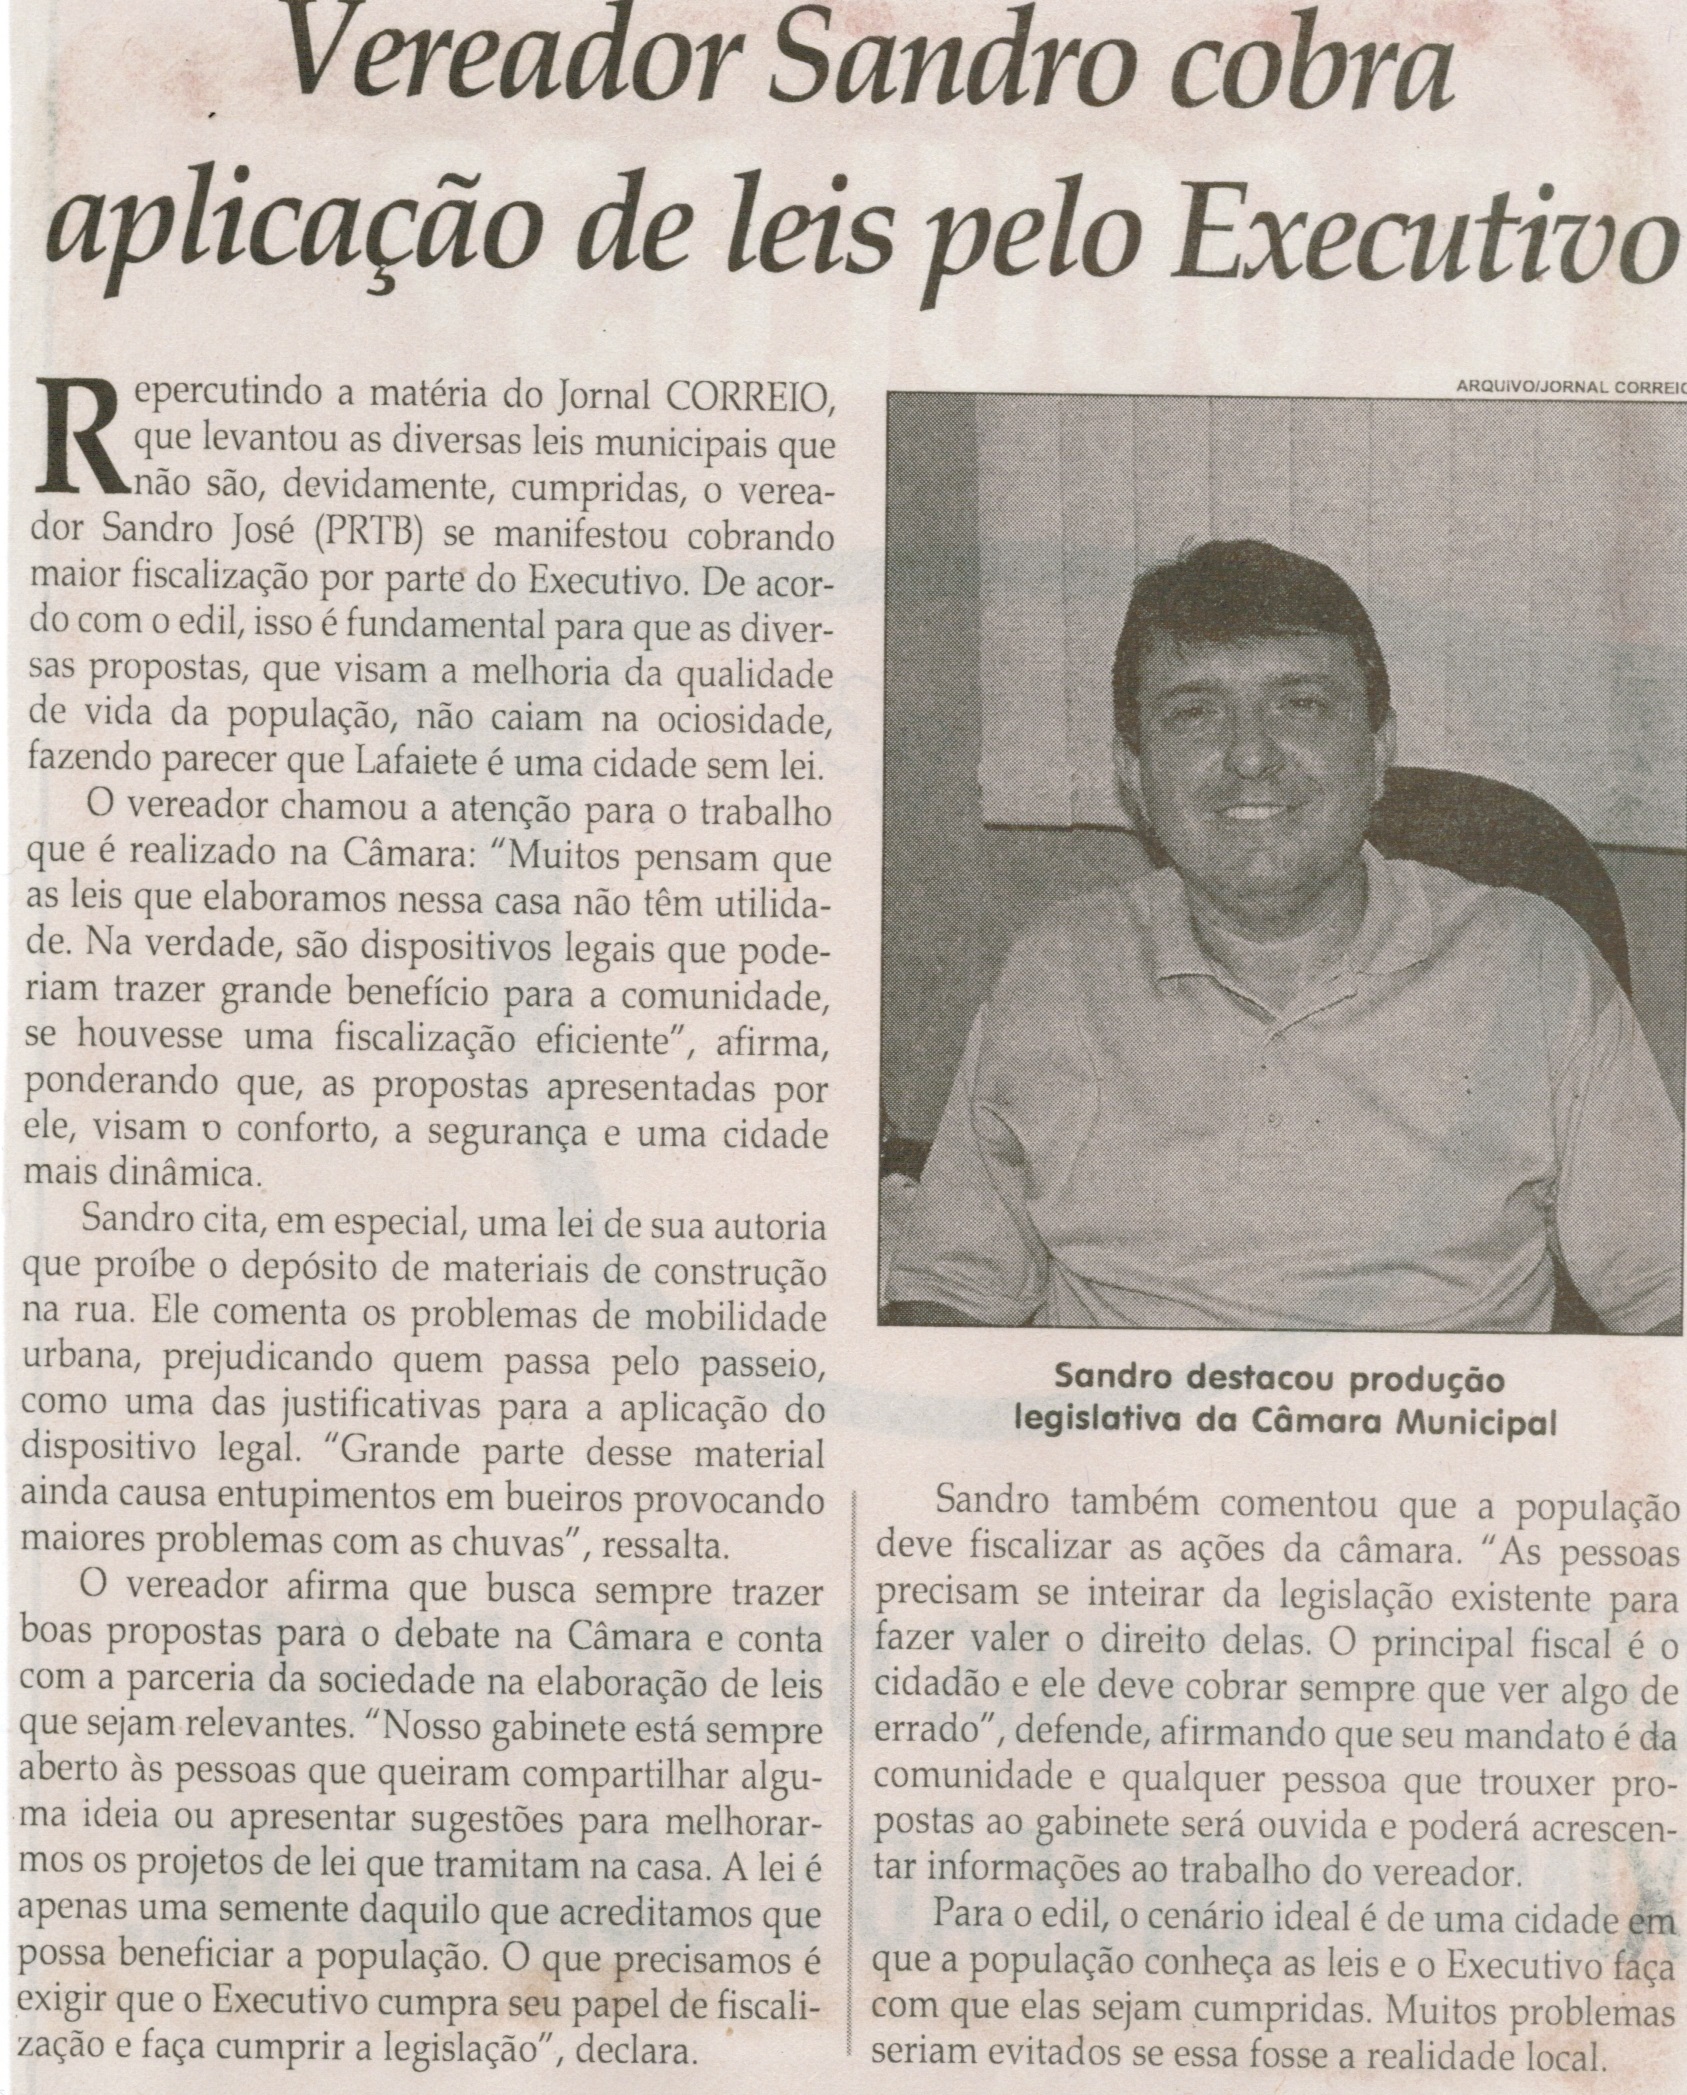 Vereador Sandro cobra aplicação de leis pelo Executivo. Jornal Correio da Cidade, Conselheiro Lafaiete, 28 fev. 2015, p. B3.